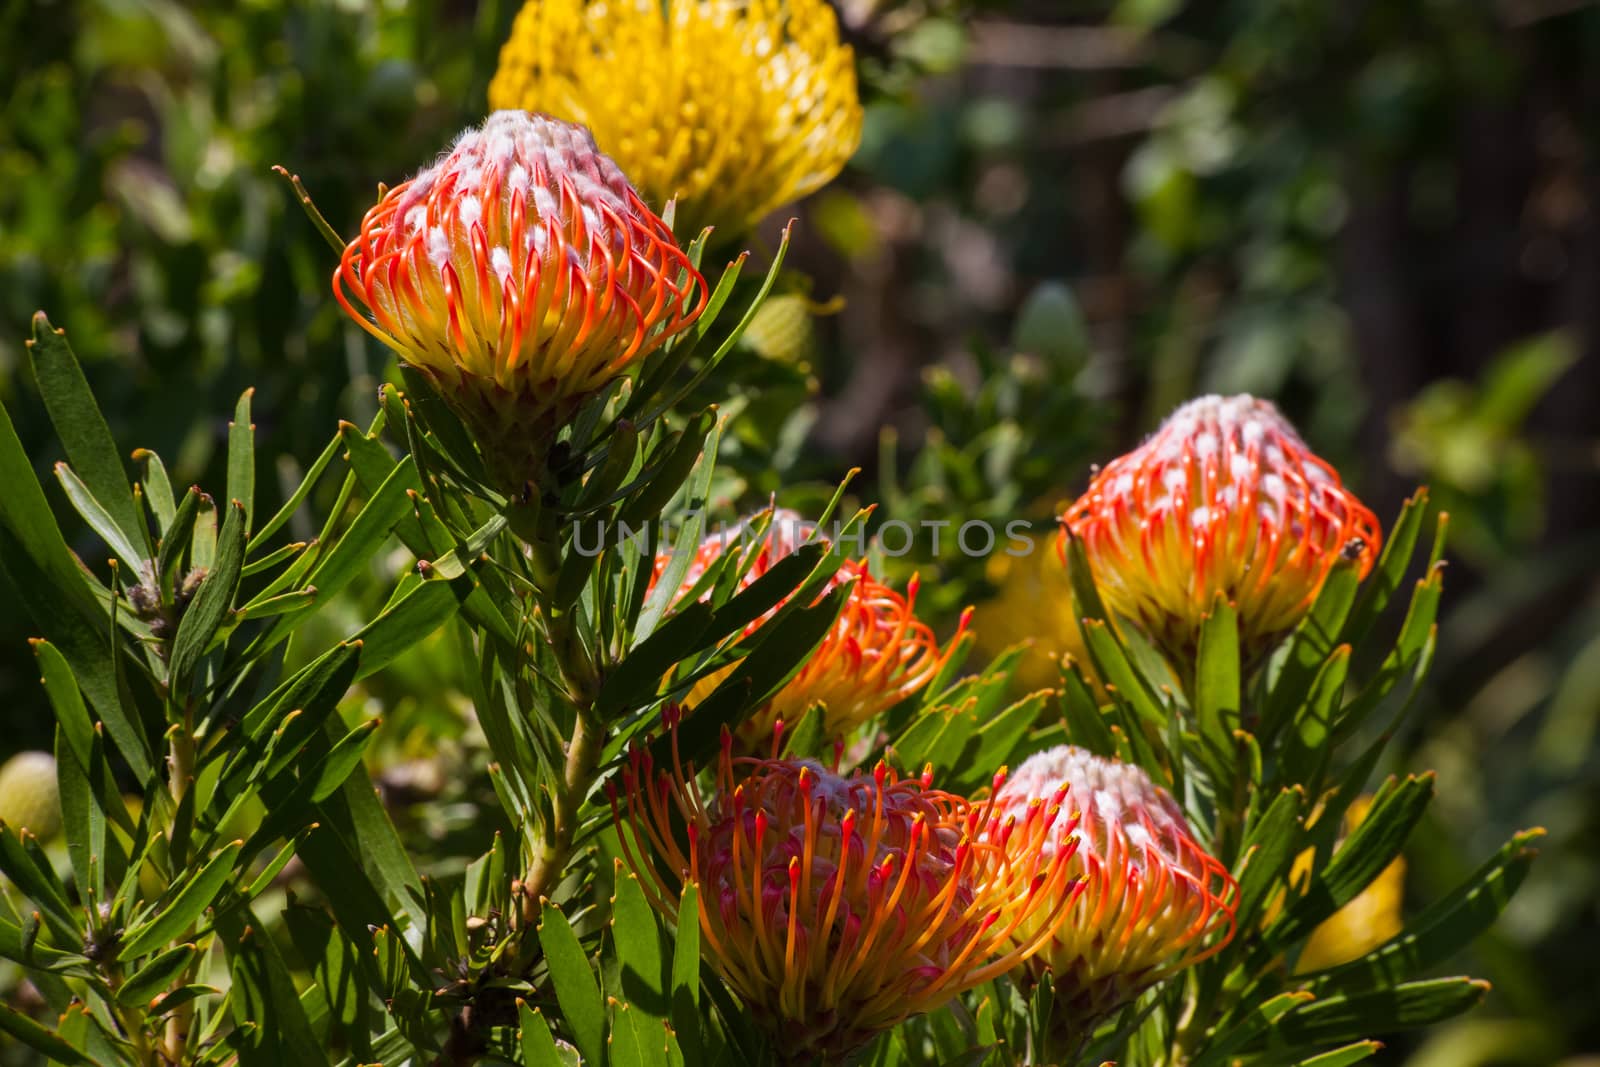 Pincusion (Leucospermum cordifolium) by kobus_peche